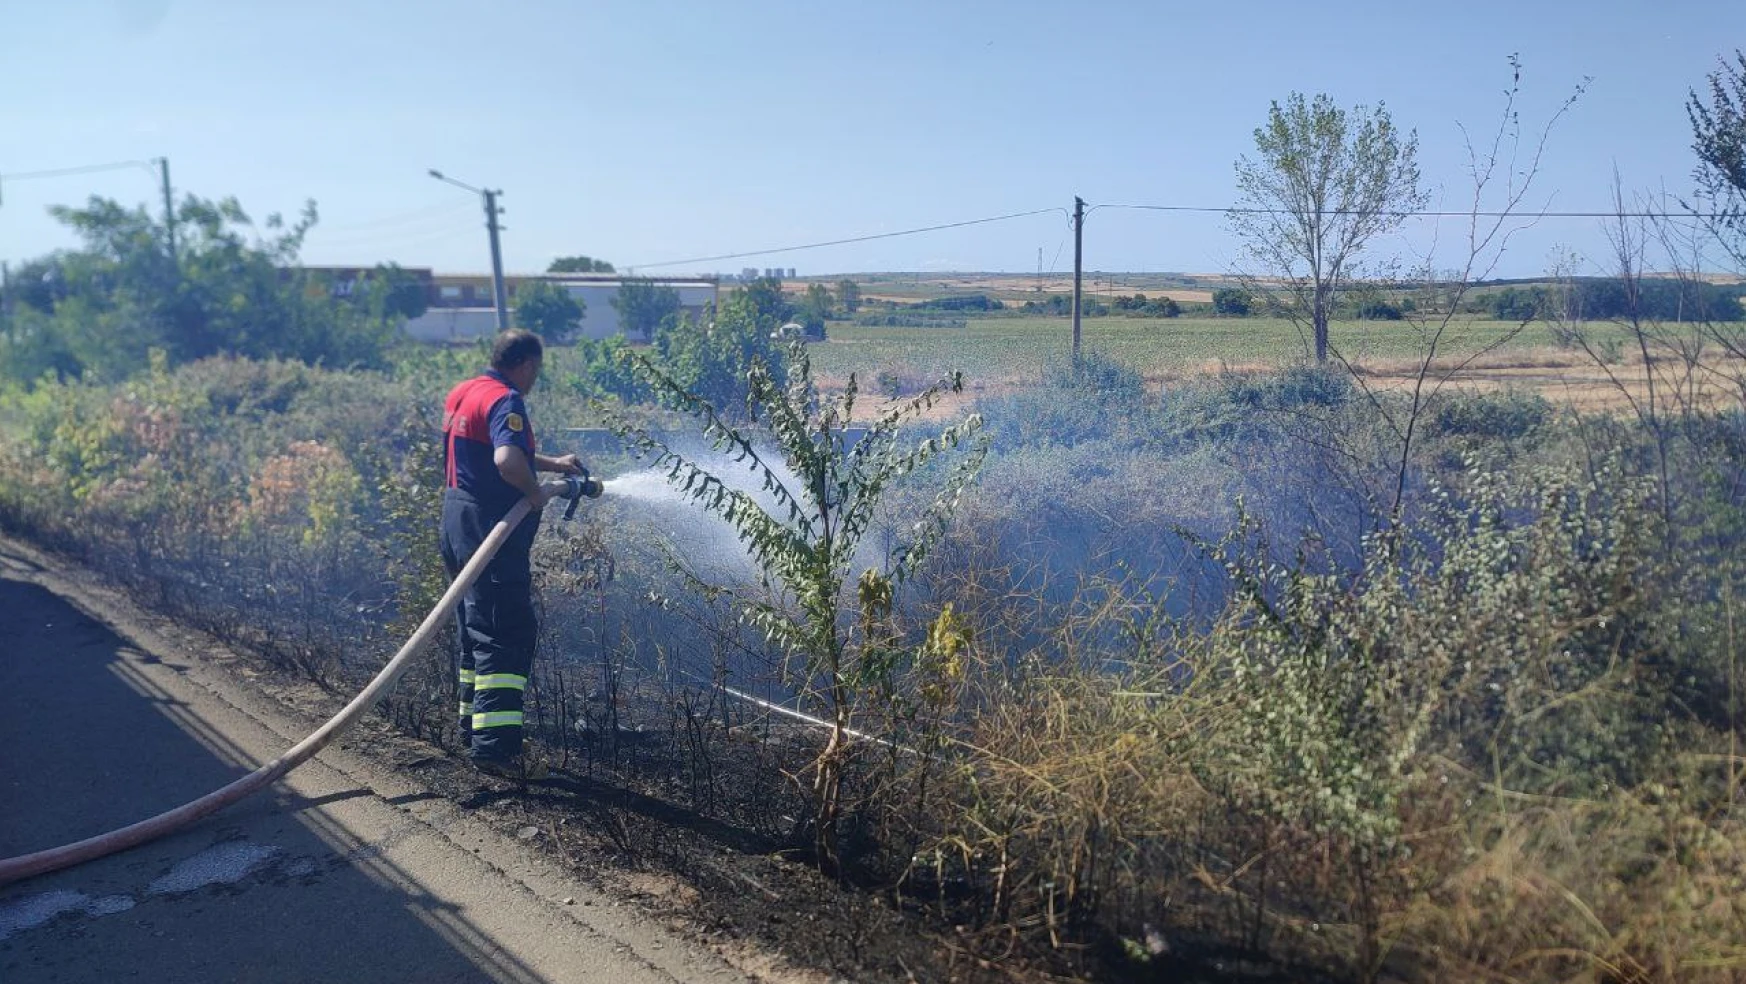 Edirne'de çıkan anız yangını söndürüldü